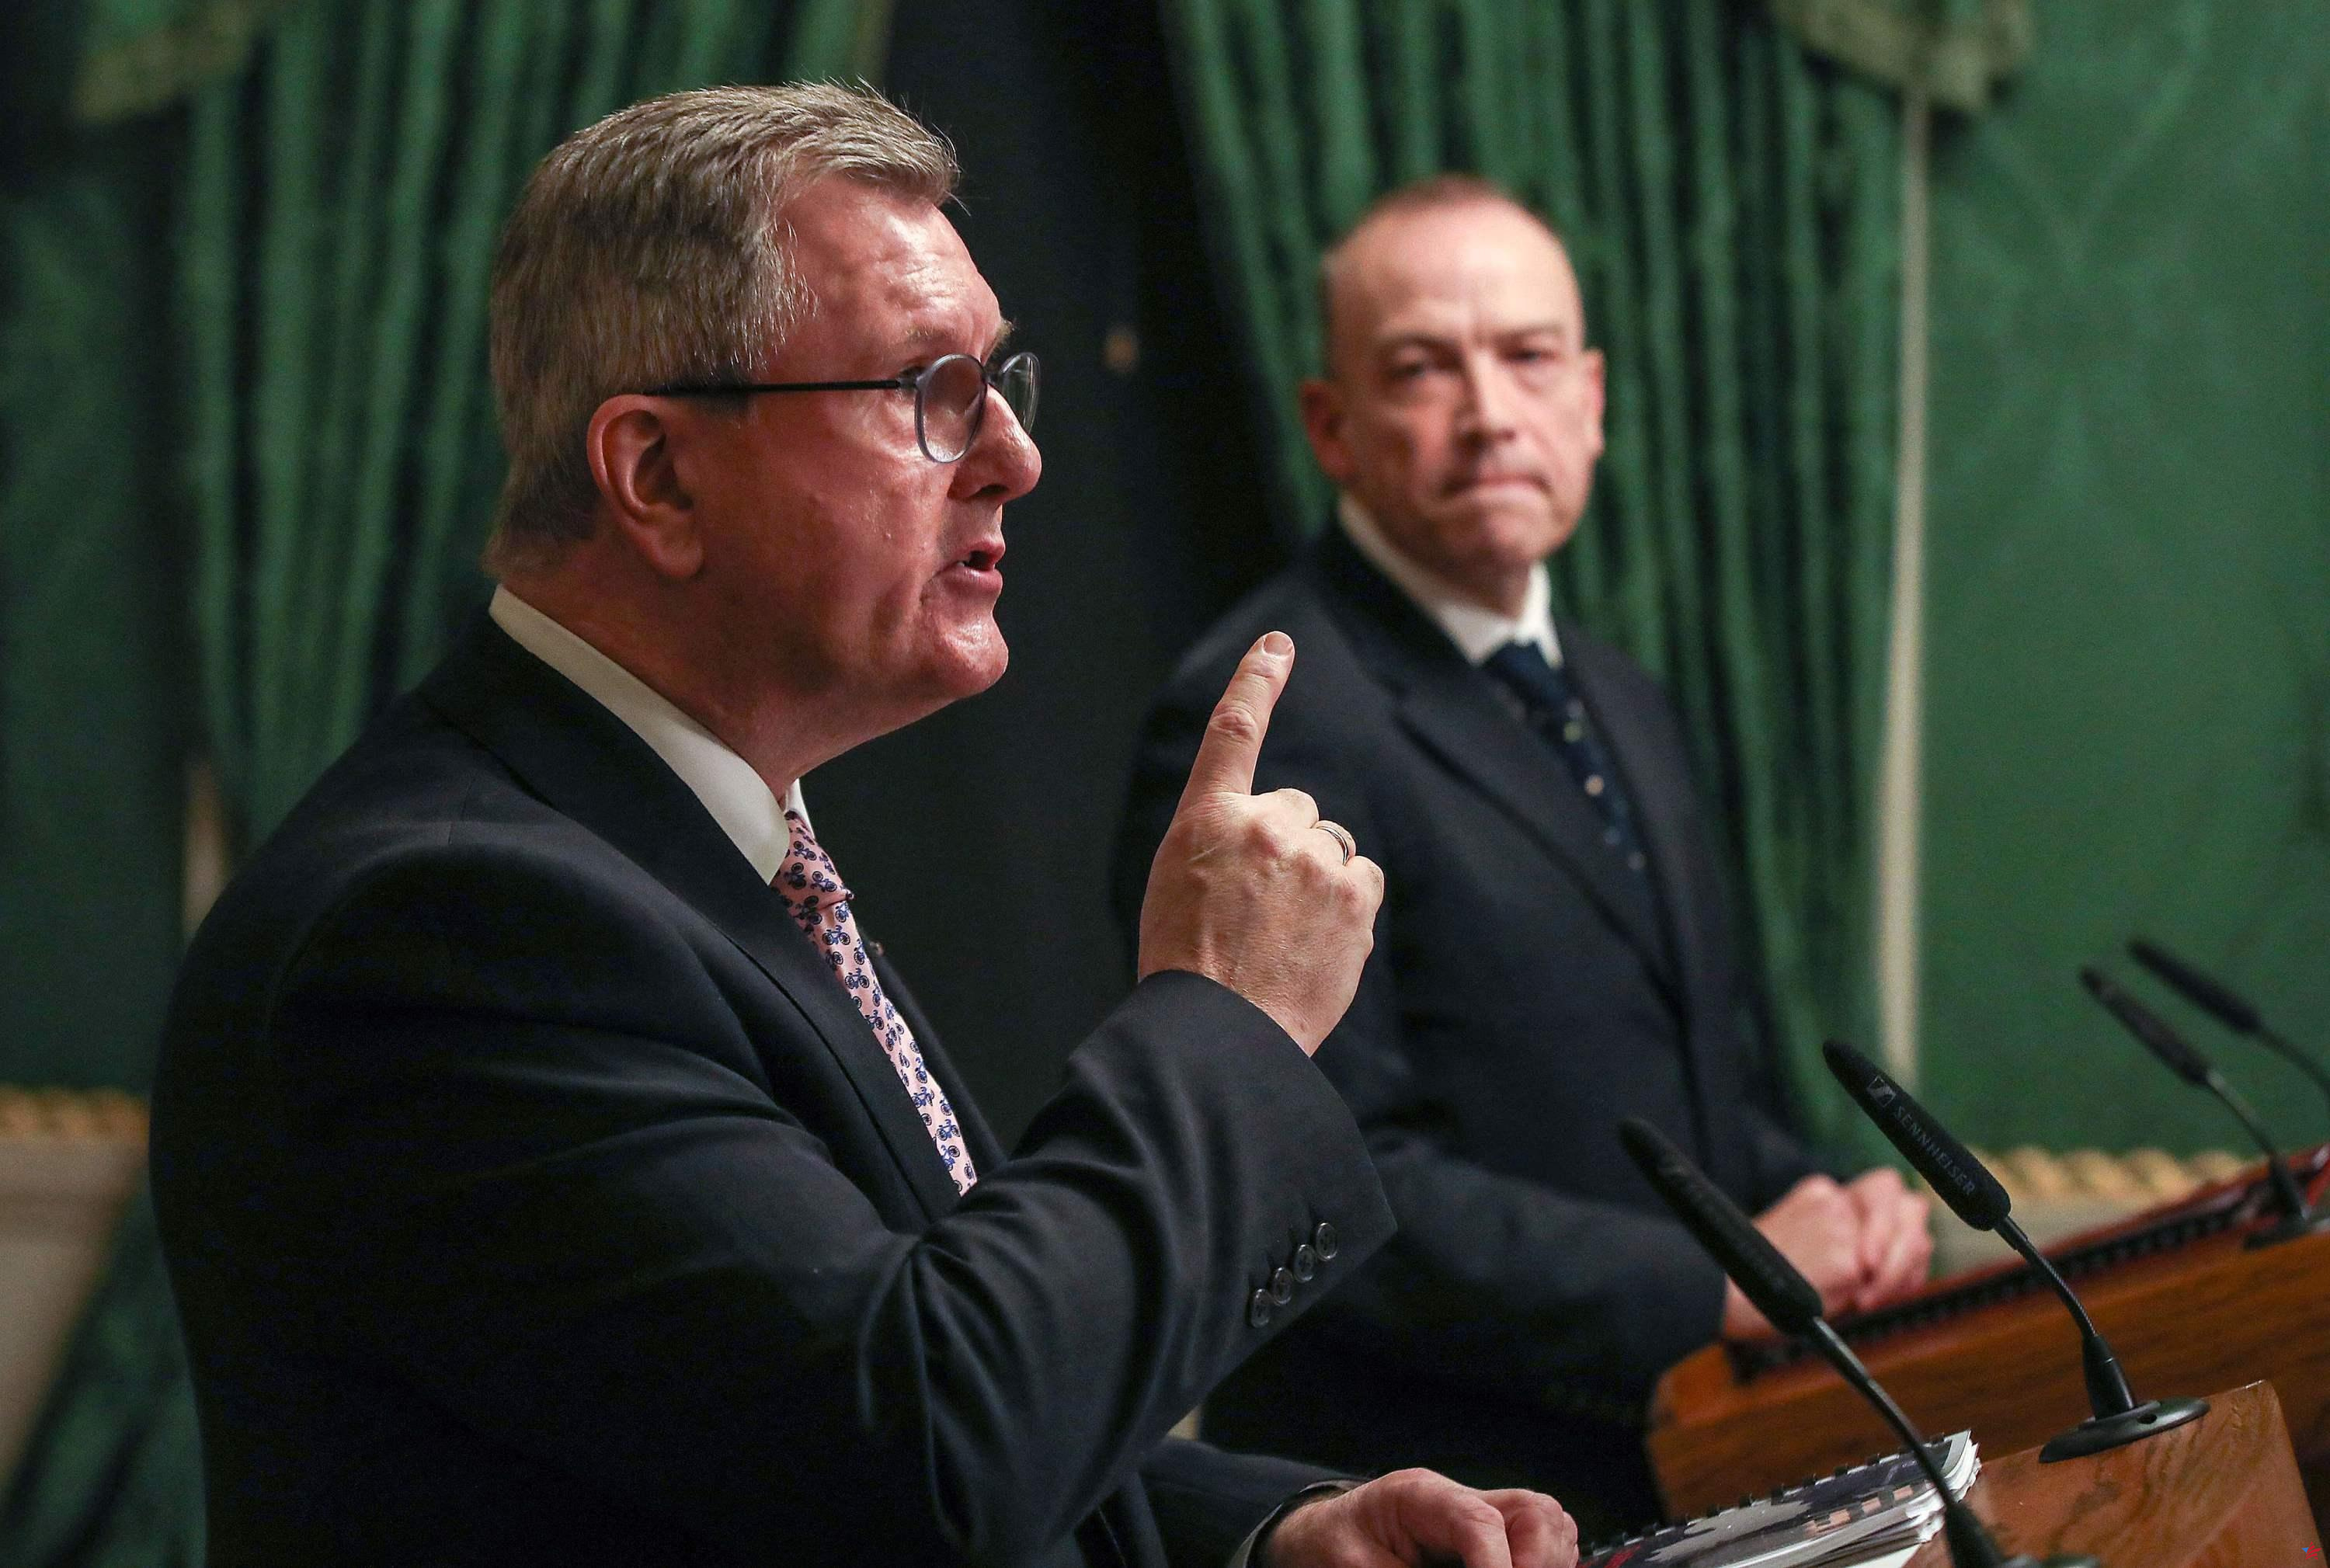 Londres afirma haber llegado a un “buen” acuerdo con los unionistas de Irlanda del Norte